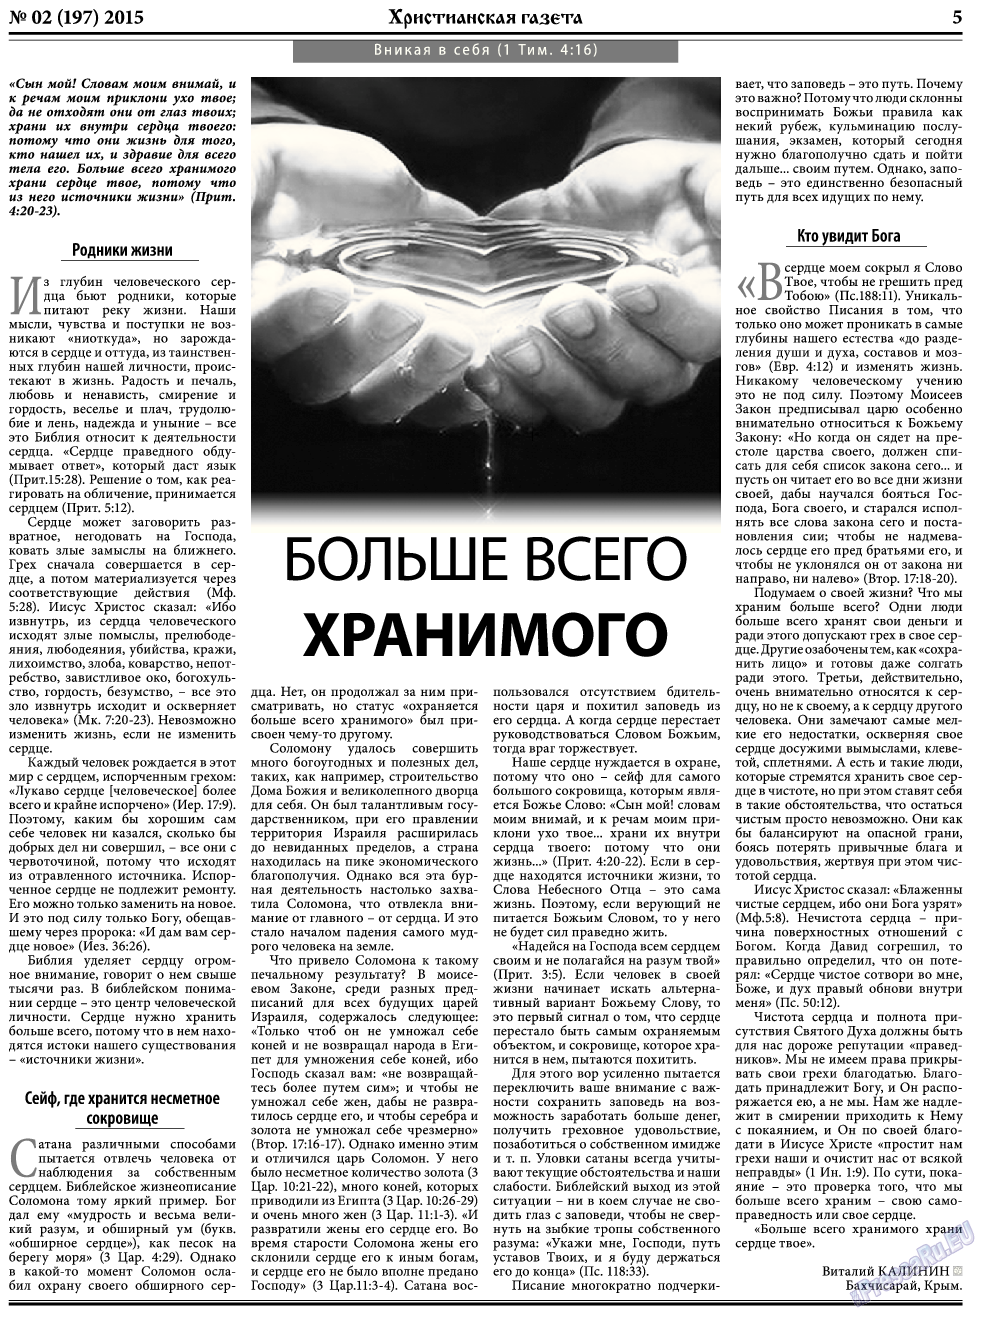 Христианская газета, газета. 2015 №2 стр.5